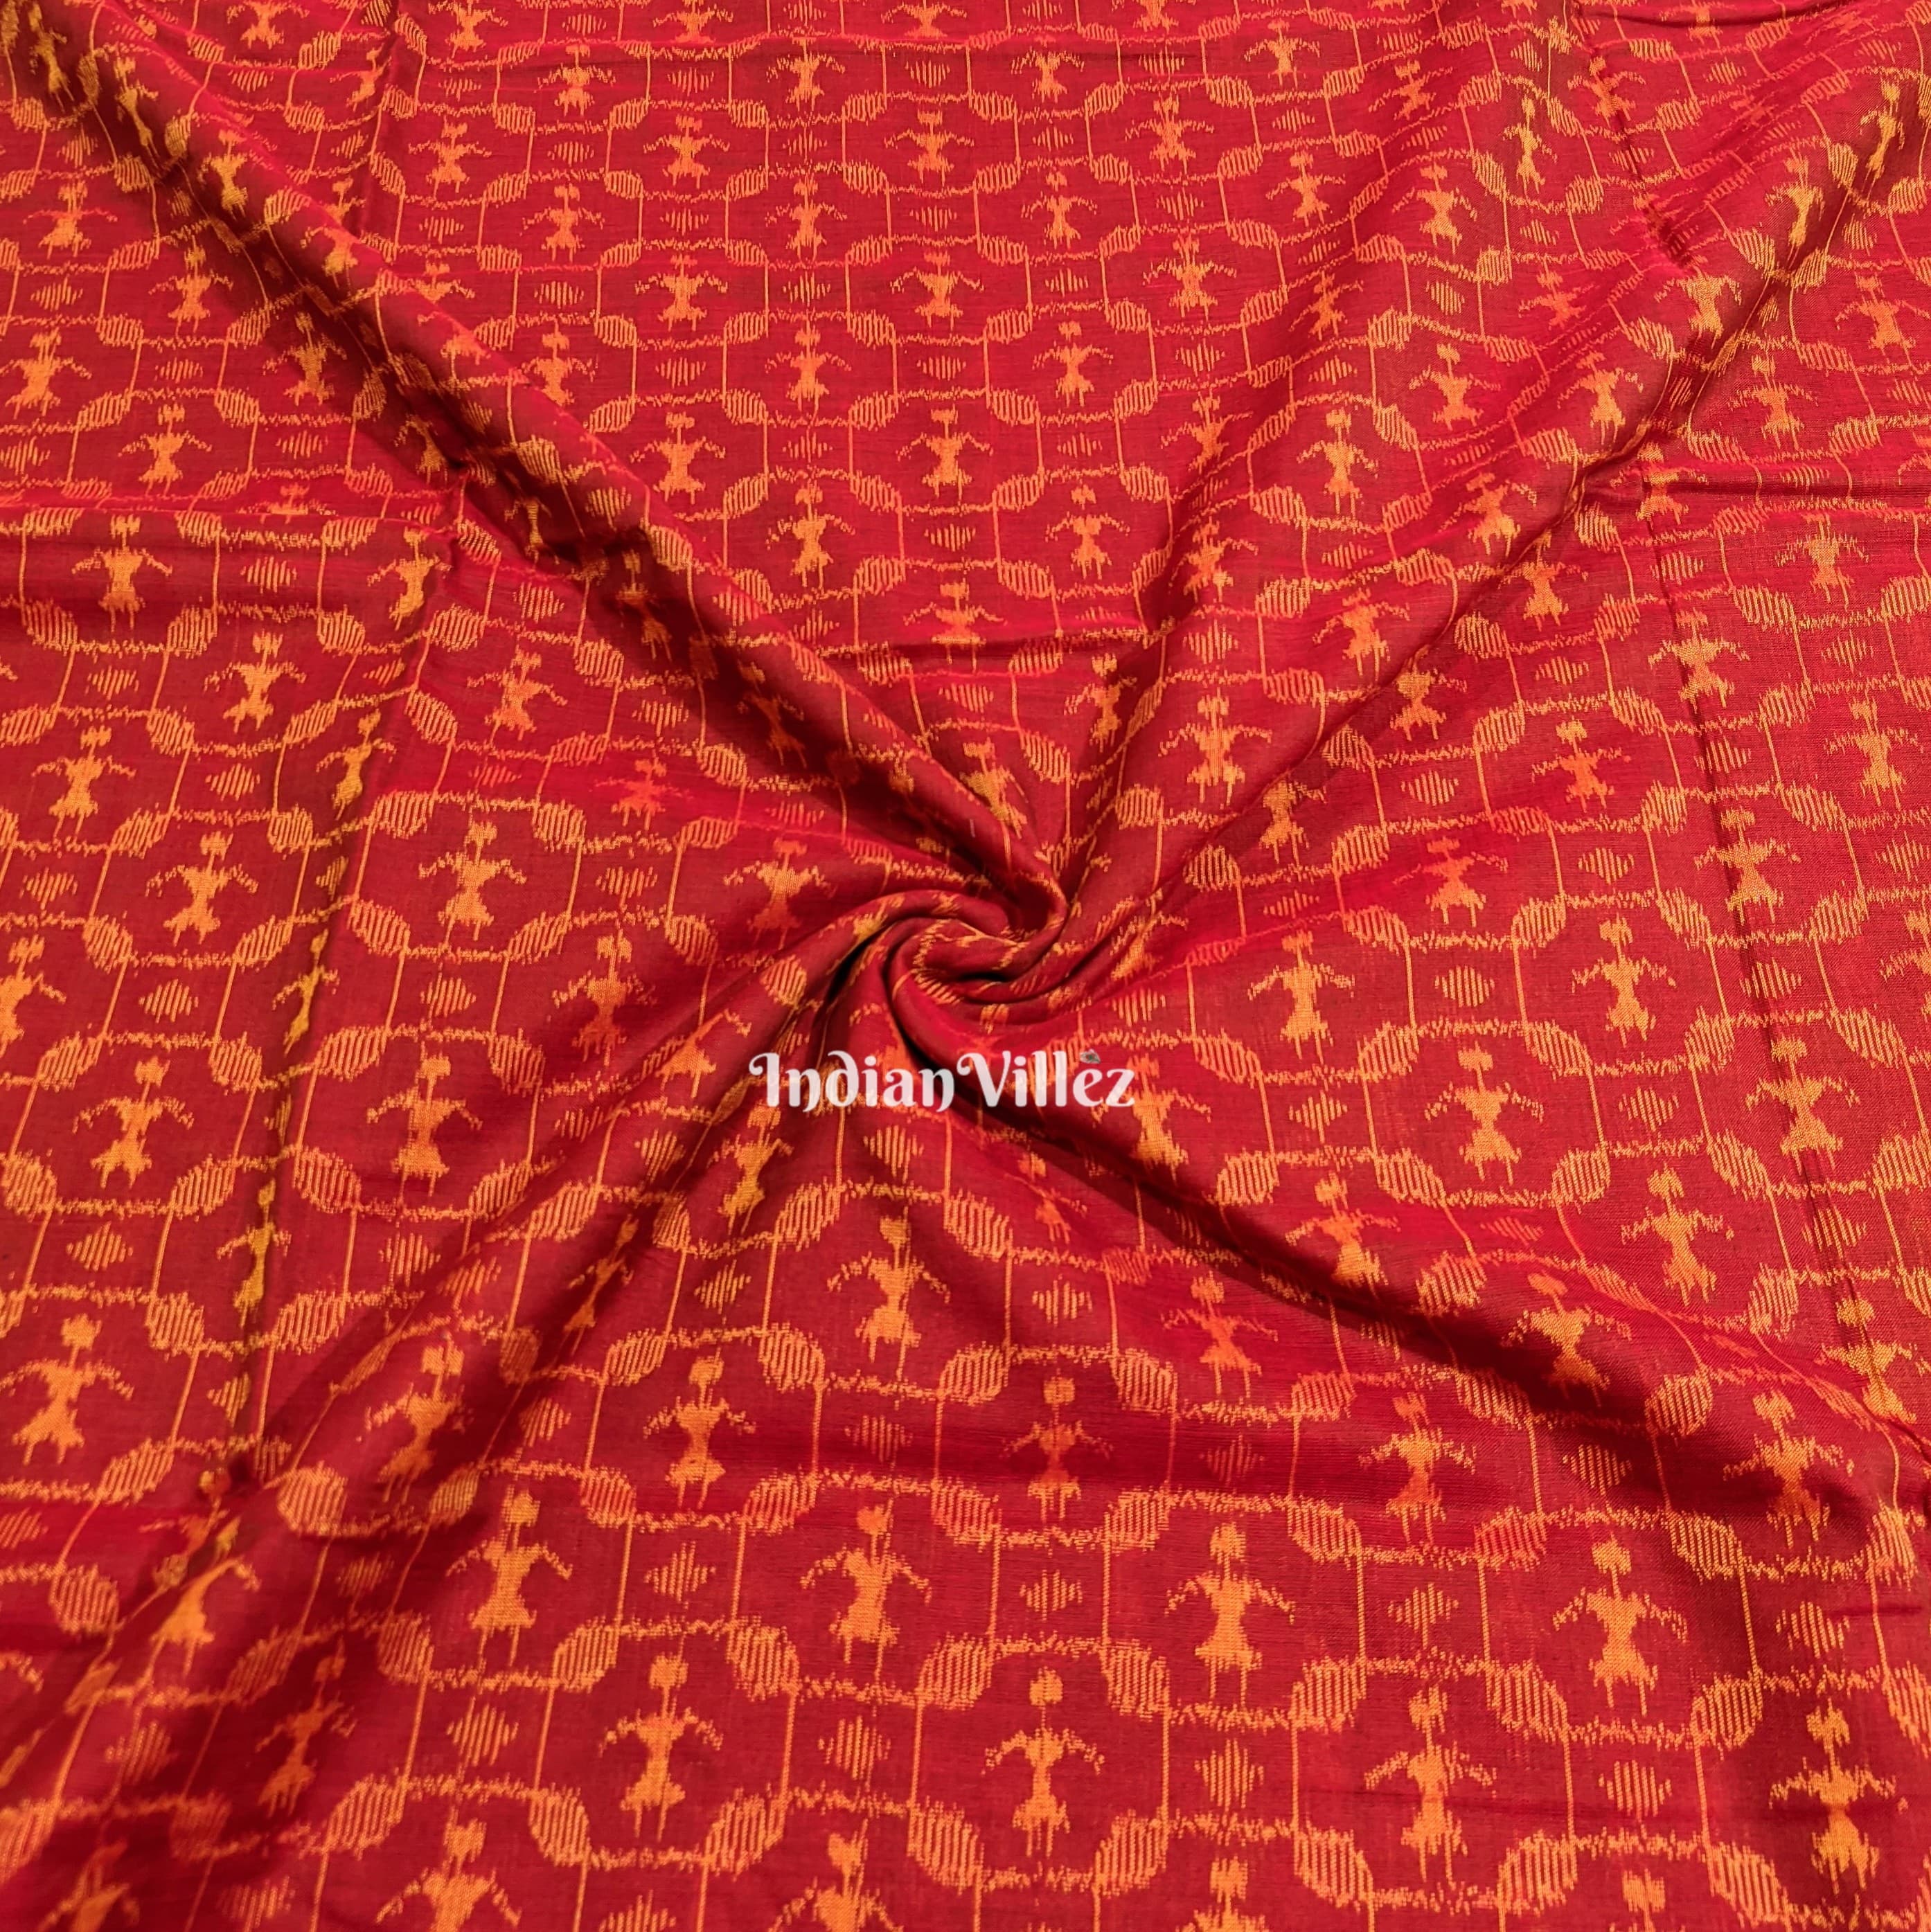 Reddish Orange Tribal Sambalpuri Ikat Cotton Fabric